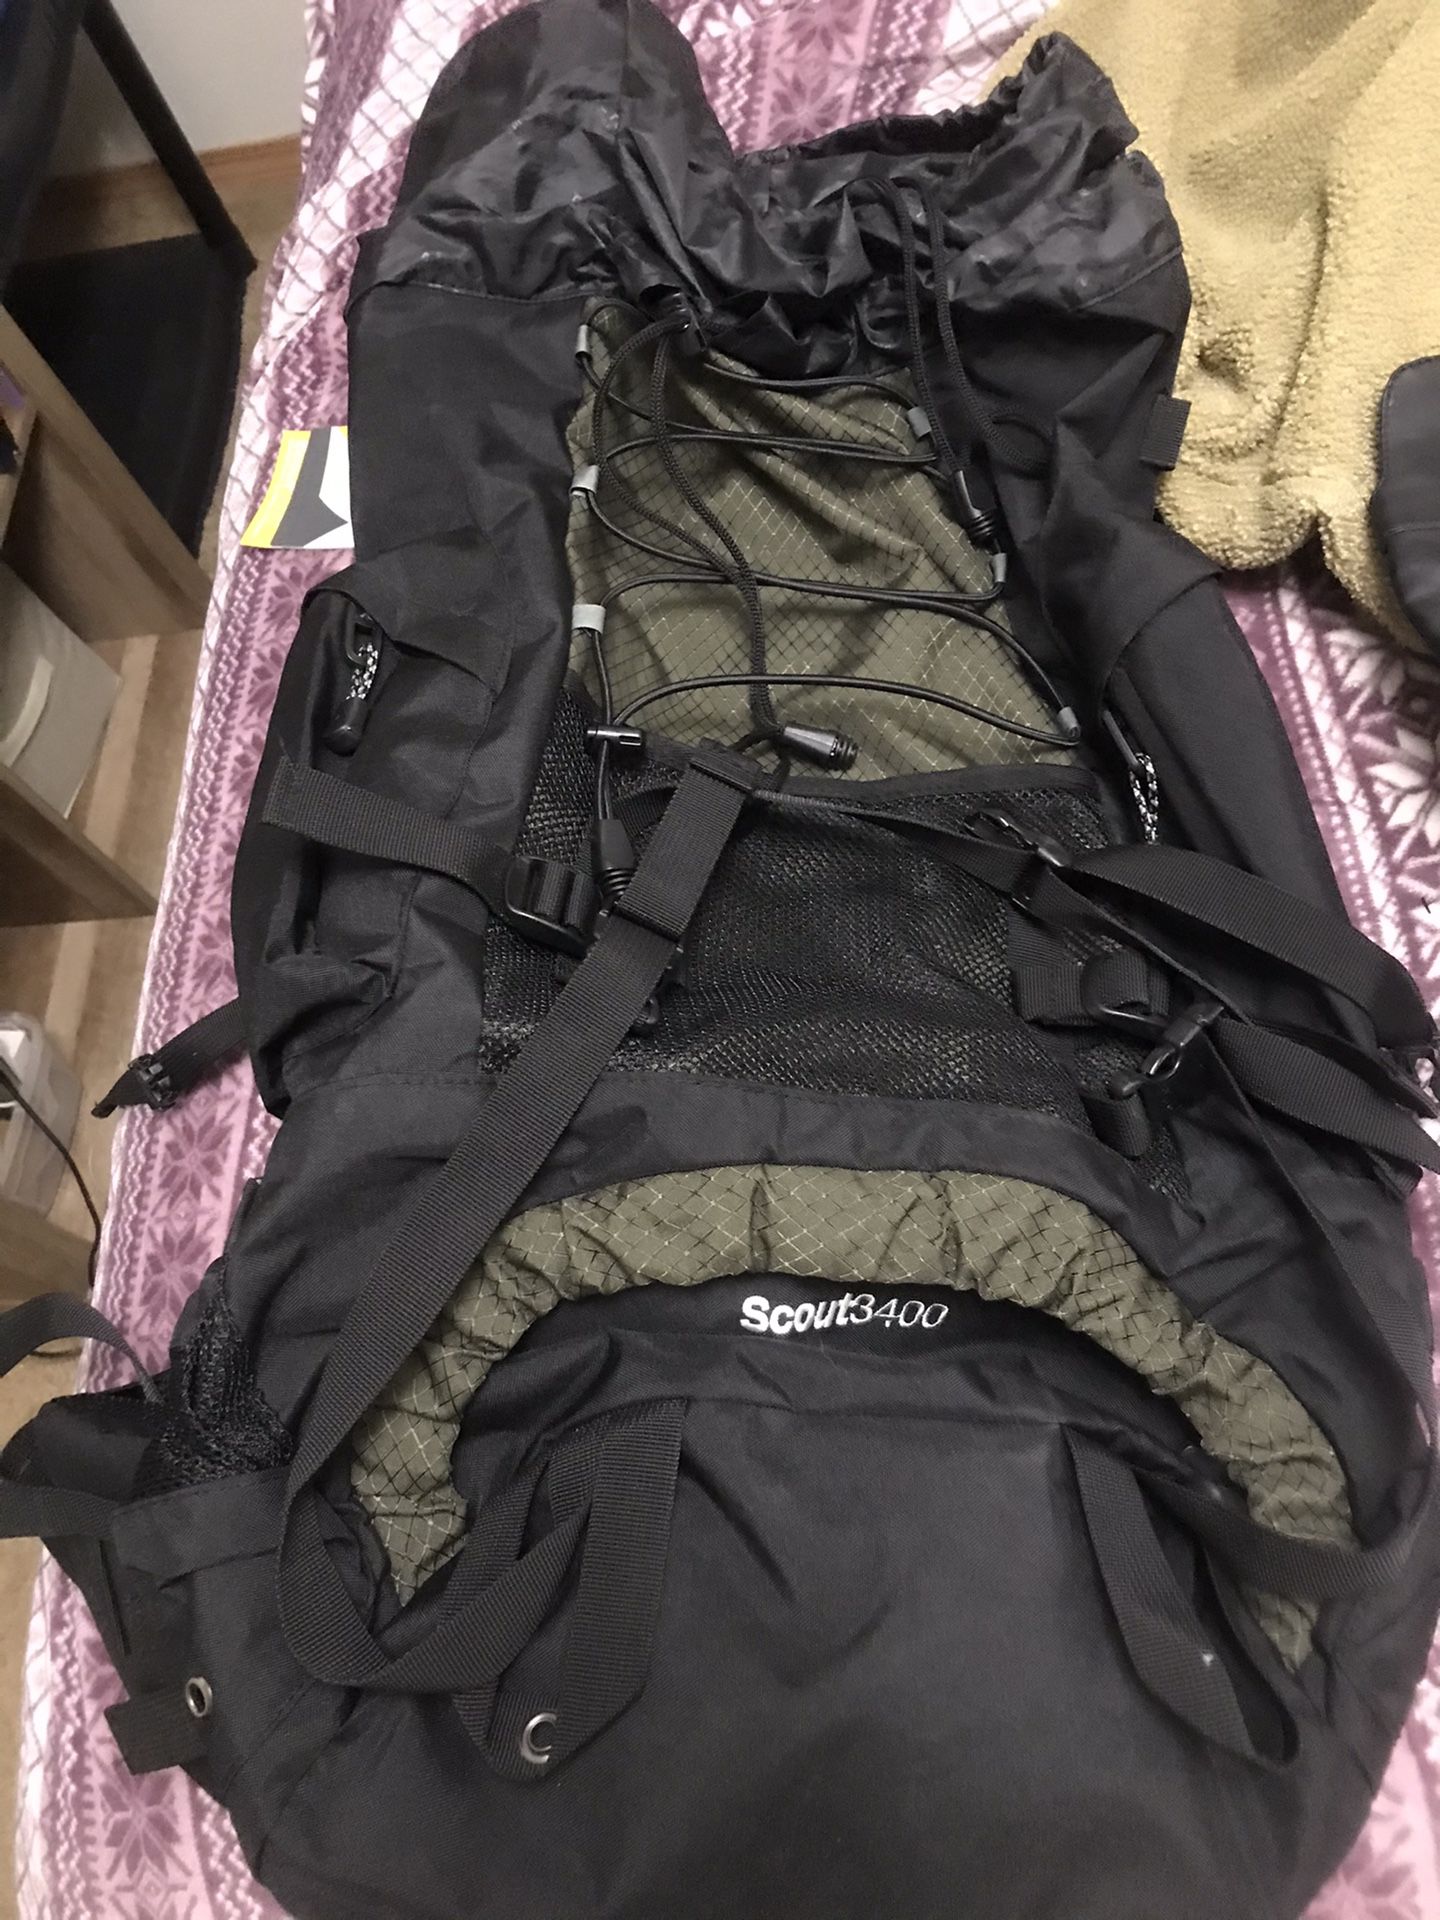 Teton Scout3400 55 liter hiking backpack